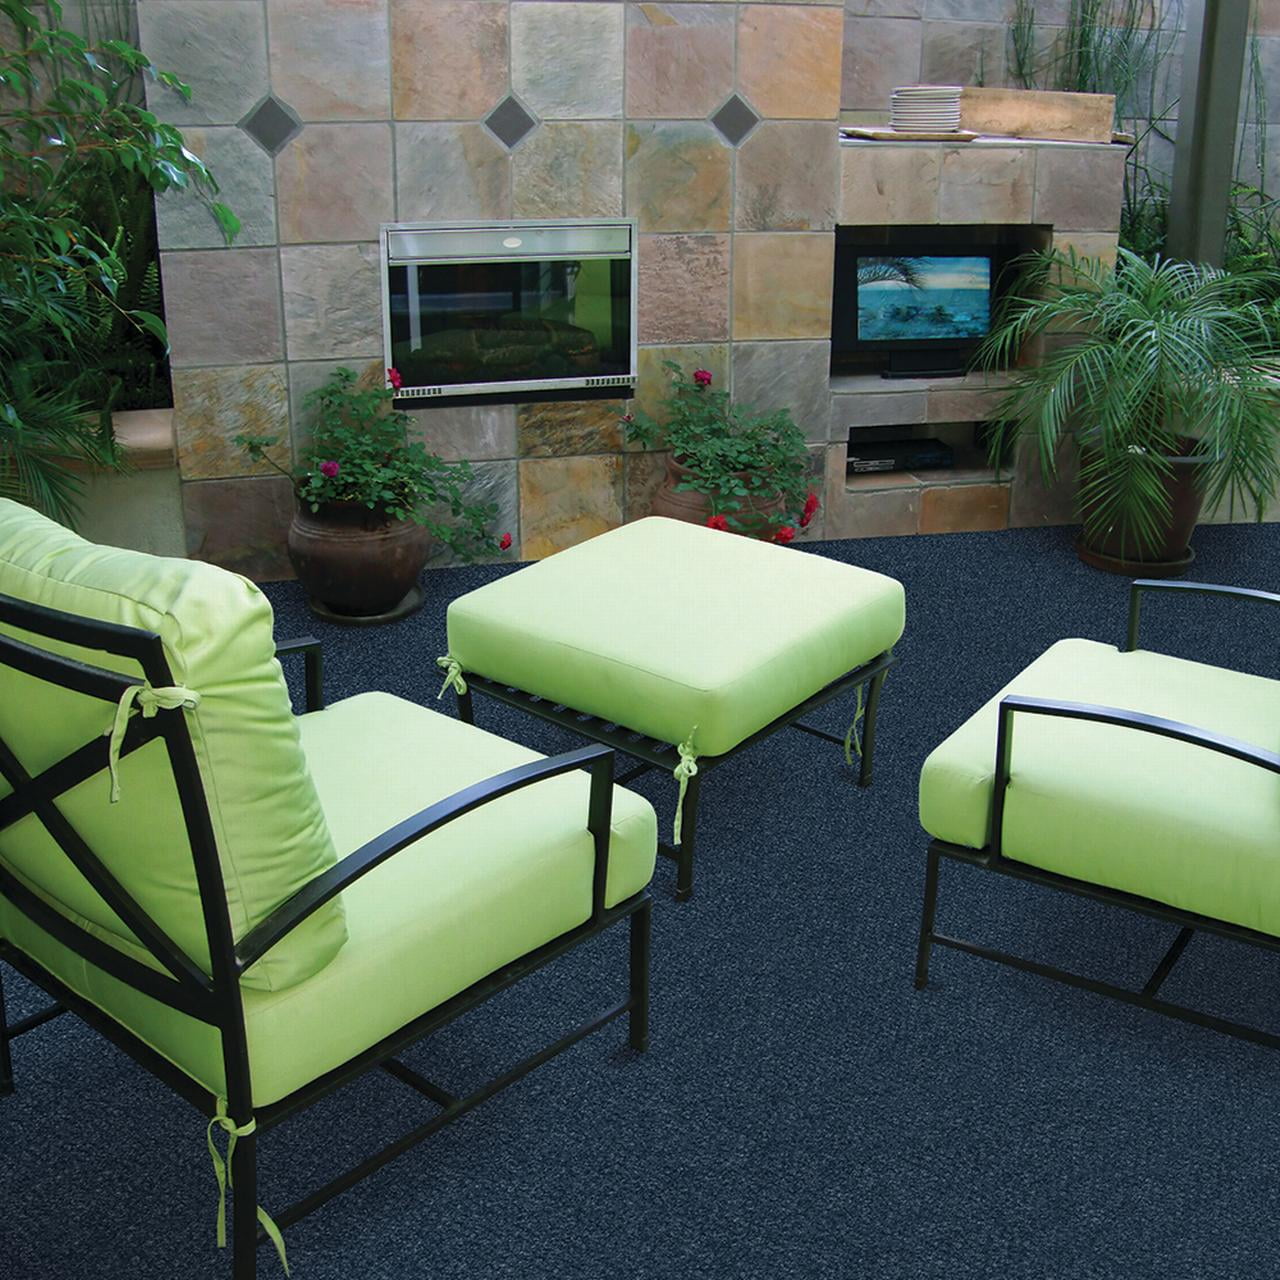 Hampton Heather Green Carpet Tiles 18 X Indoor Outdoor L And Stick 22 5 Sq Ft Per Box Pack Of 10 Com